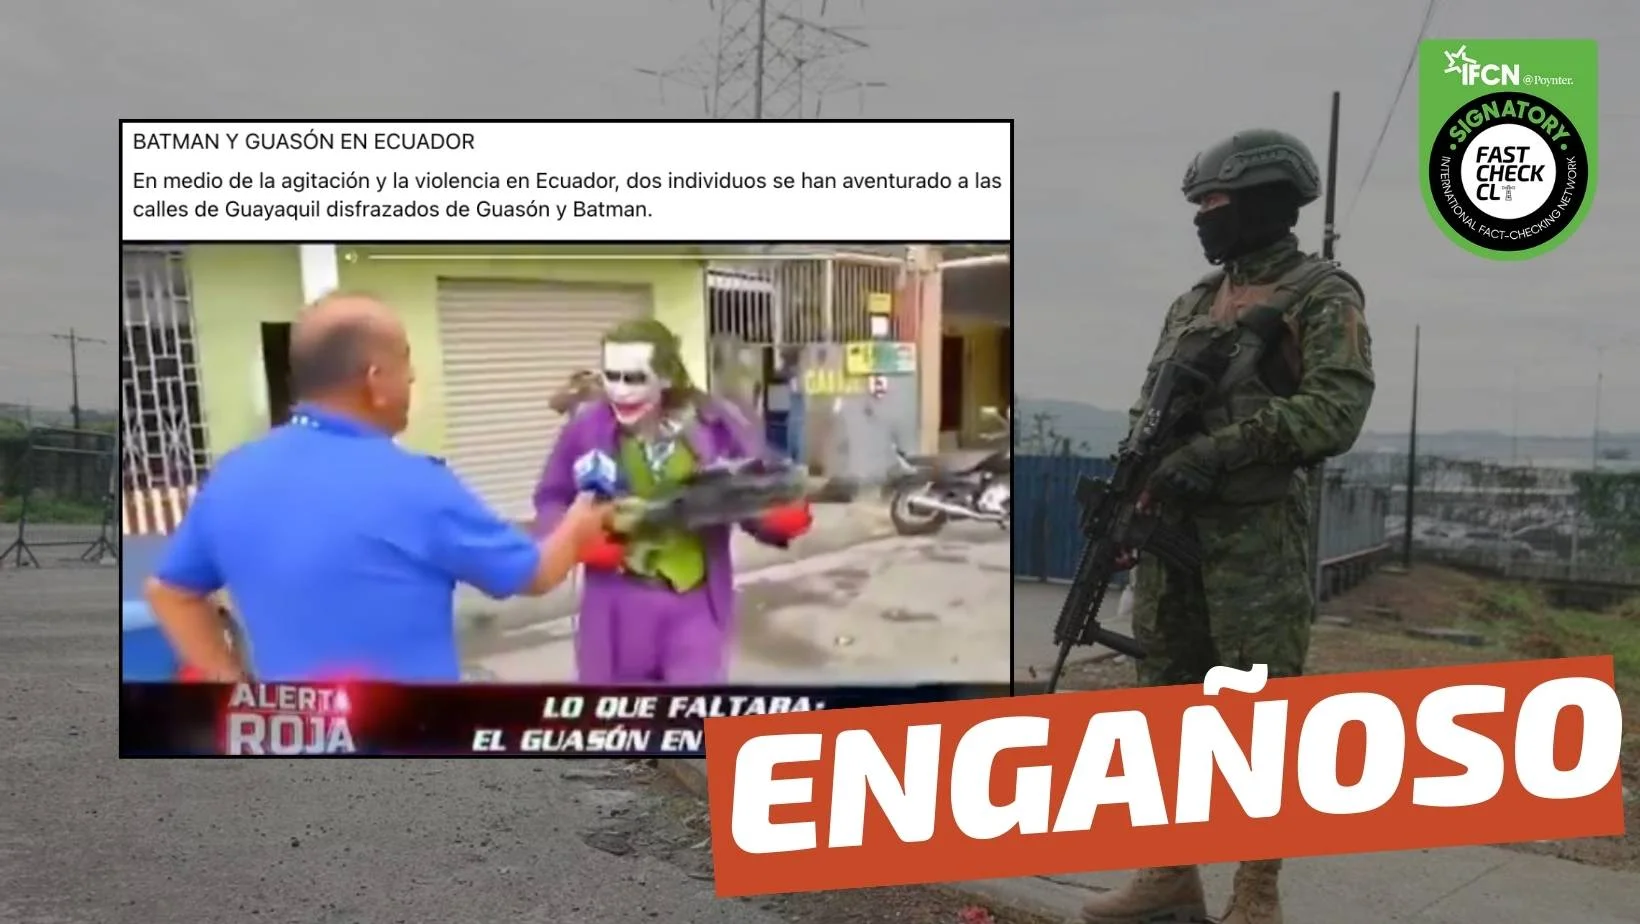 You are currently viewing (Video) “En medio de la agitación y la violencia en Ecuador, dos individuos se han aventurado a las calles de Guayaquil disfrazados de Guasón y Batman”: #Engañoso